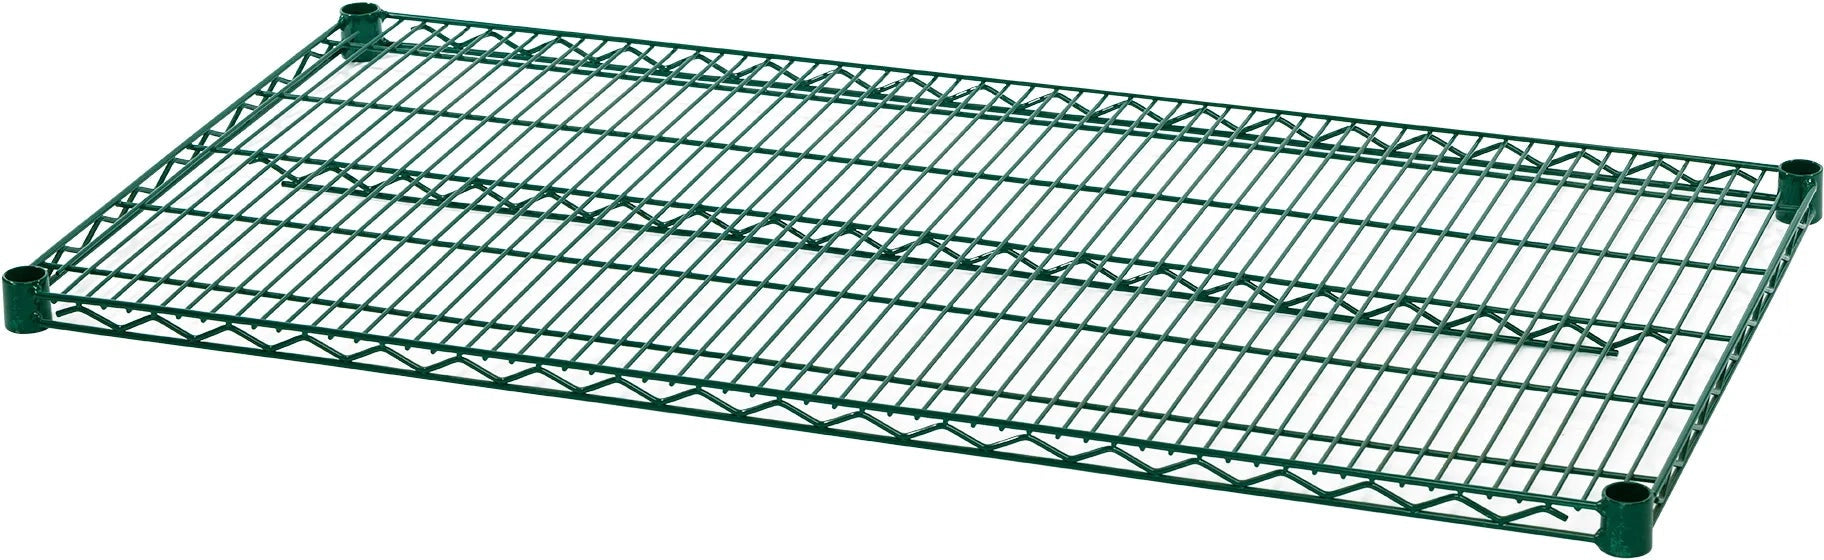 Julien - Rosko 24" x 18" Shelf for Wire Shelving, Green Epoxy - RO-WS-S2418-GE